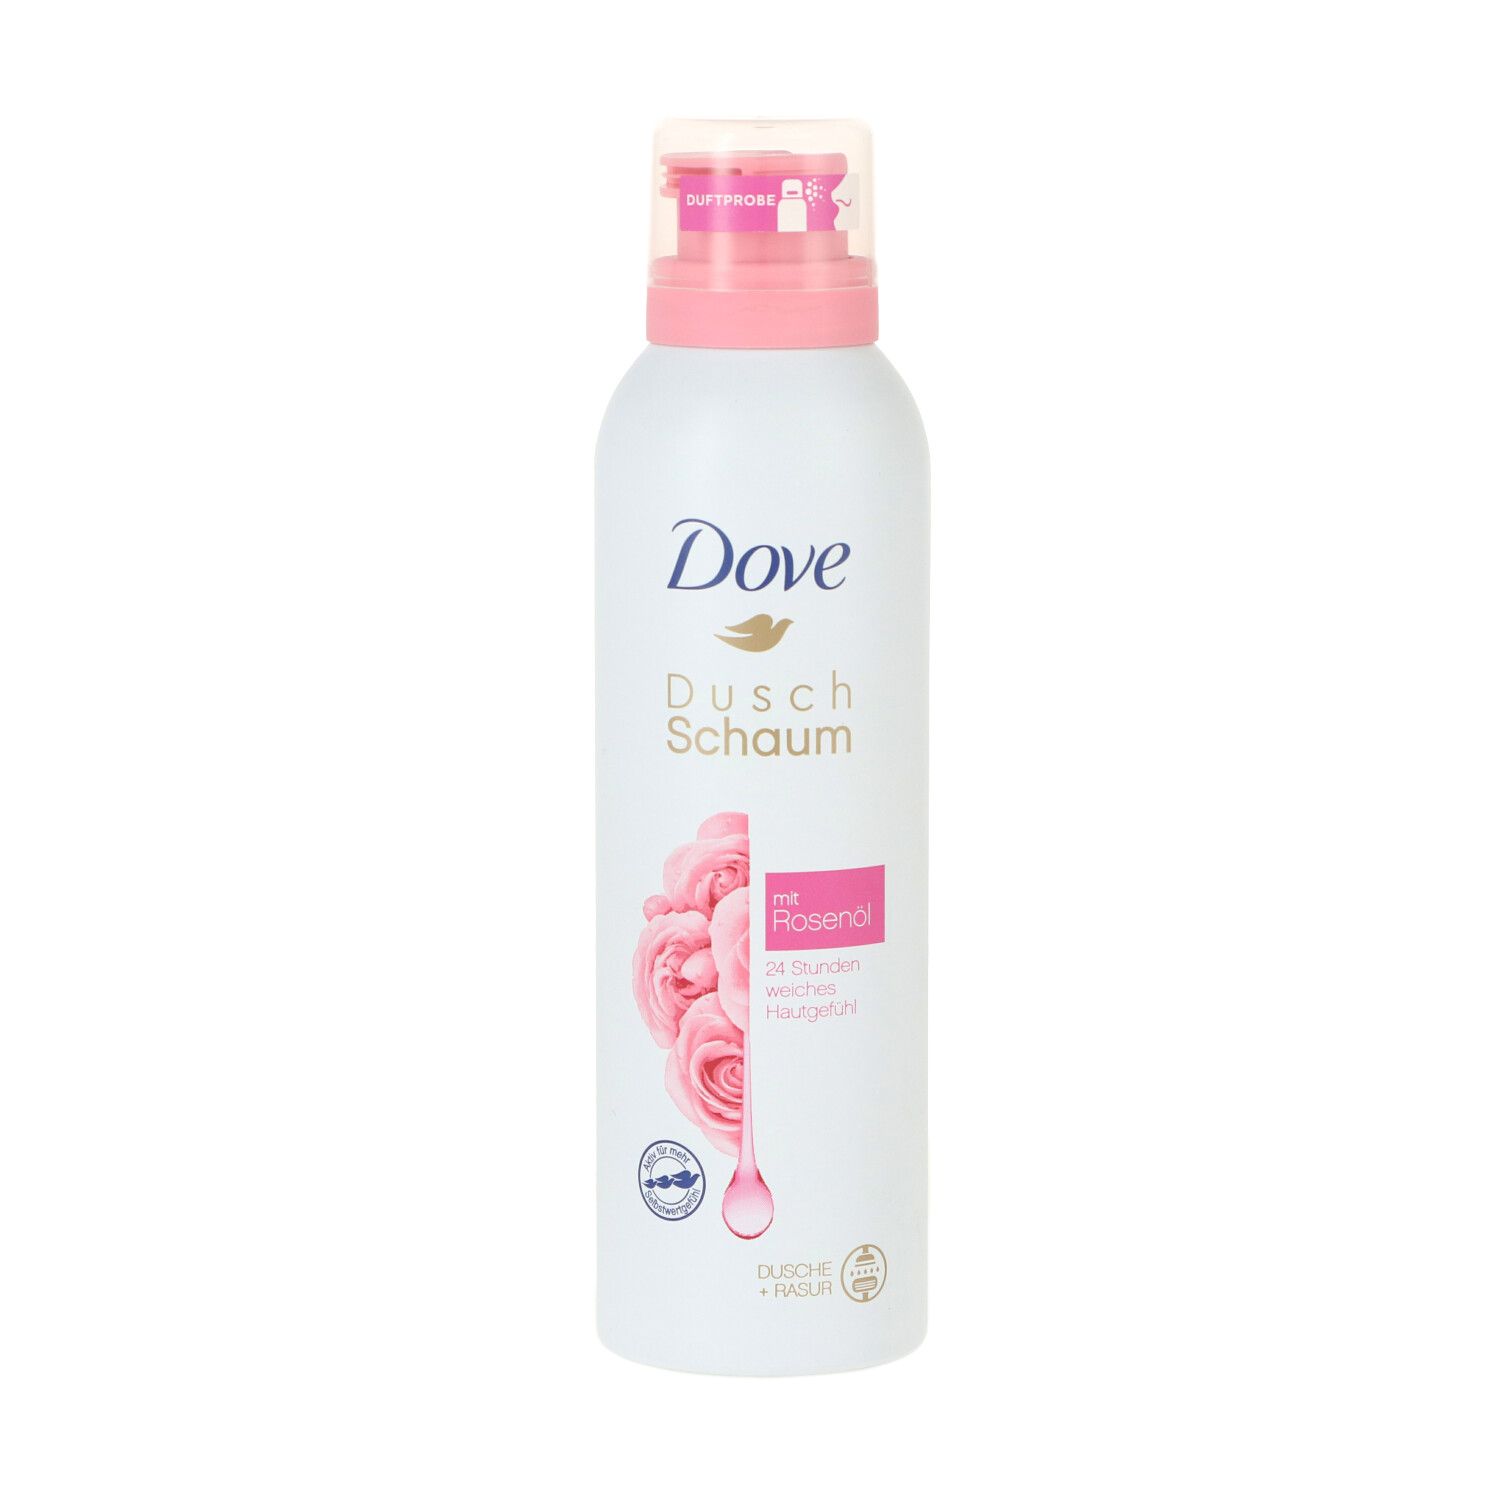 Dove Shower Mousse Rose Oil 200ml